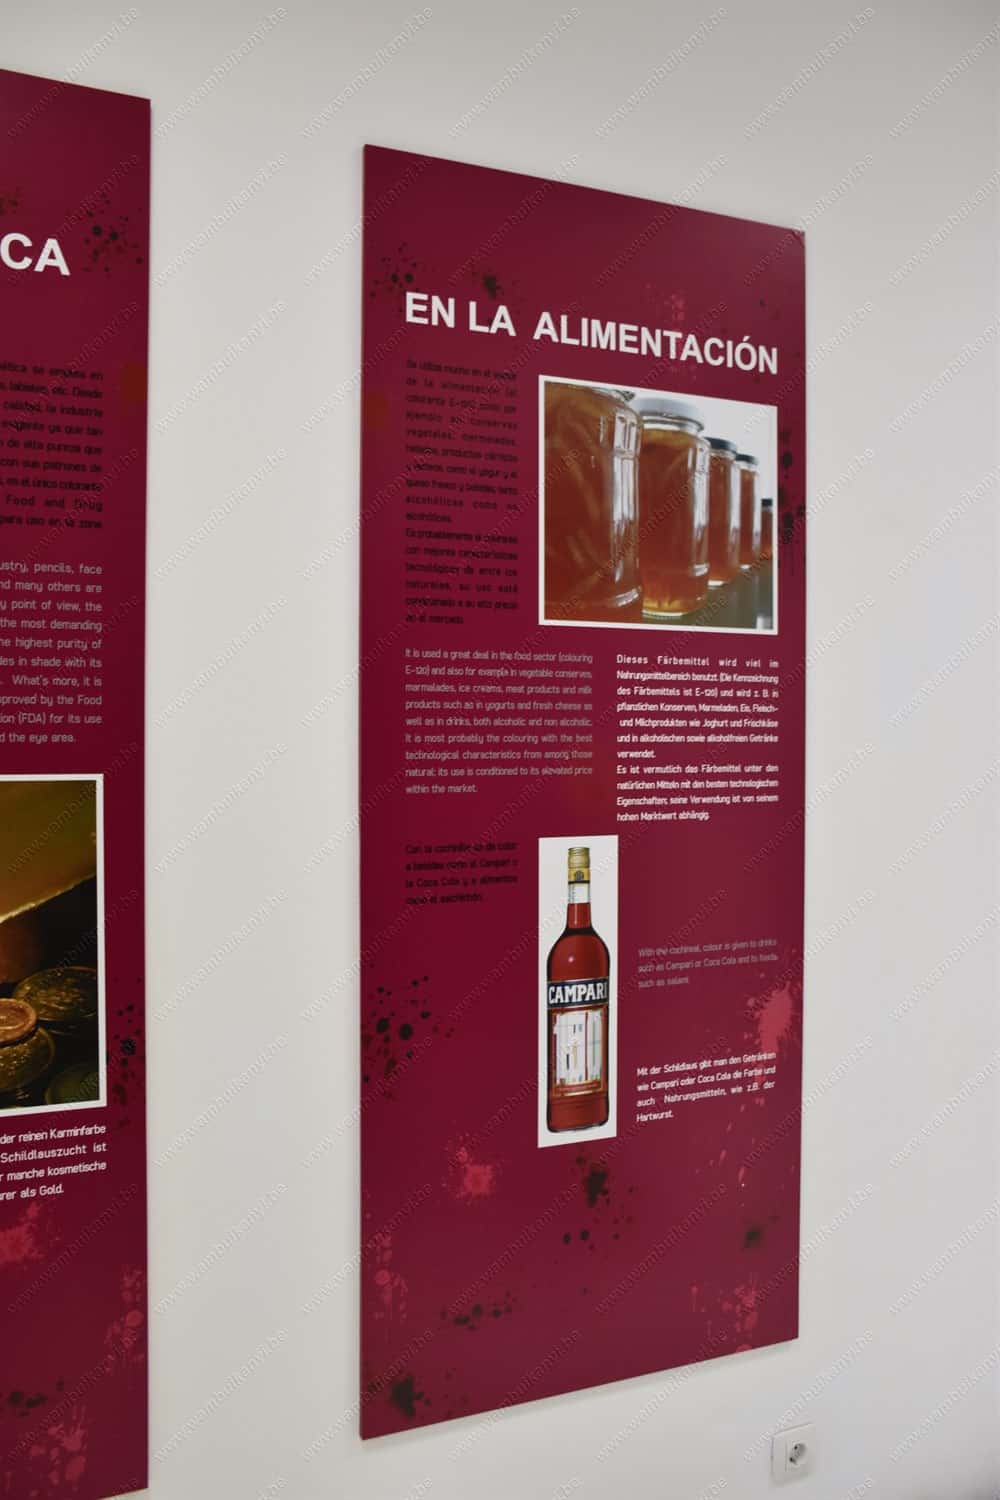 Aloe Vera Museum in Lanzarote